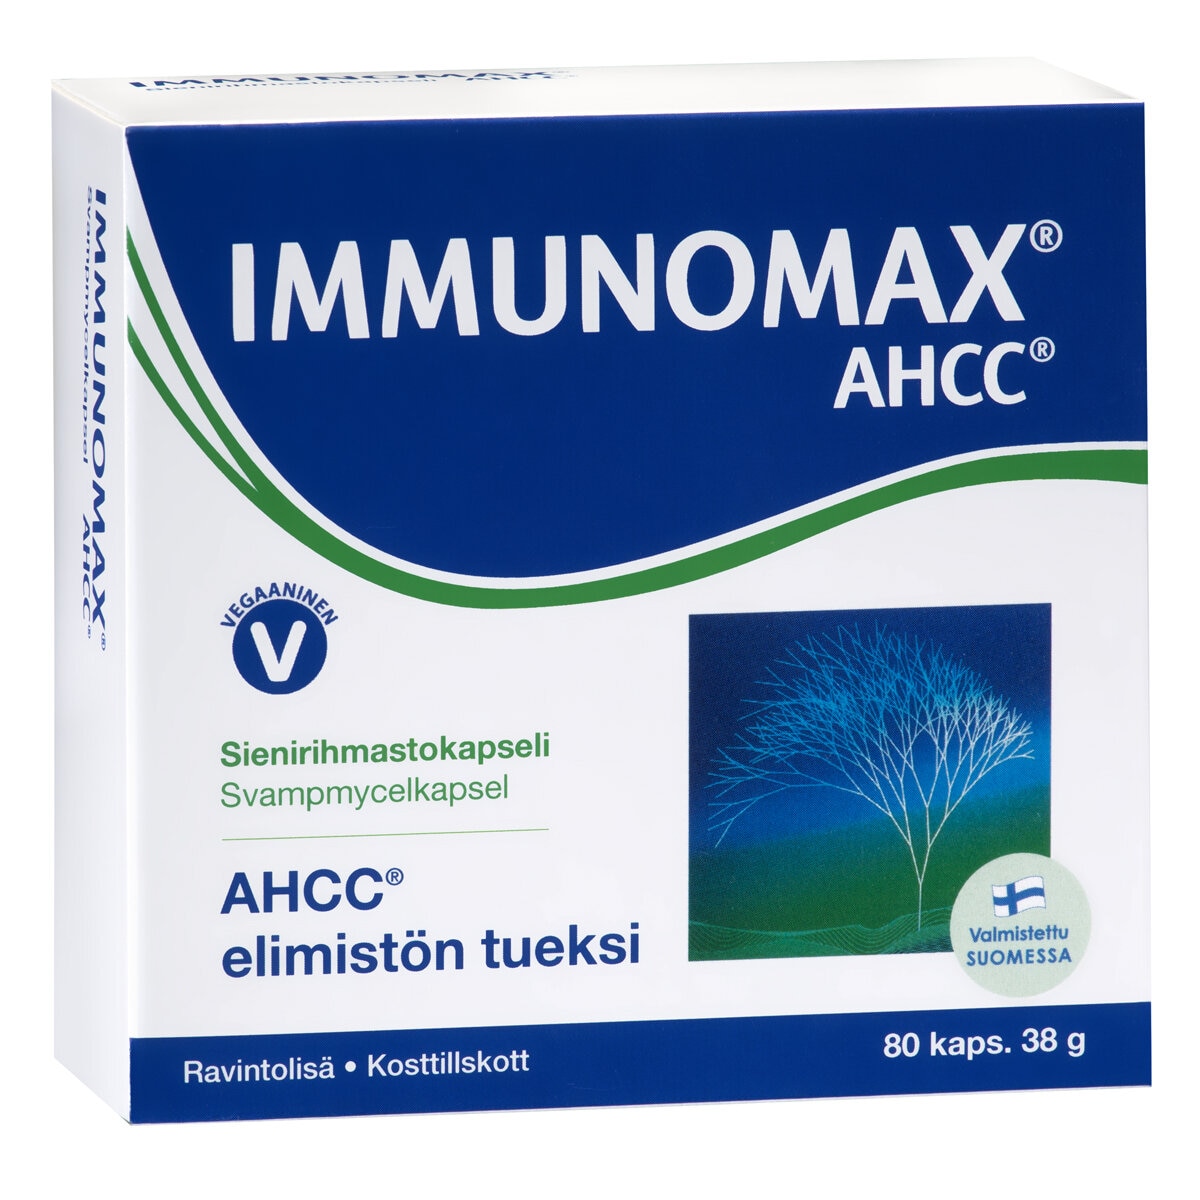 Immunomax AHCC 80 cap